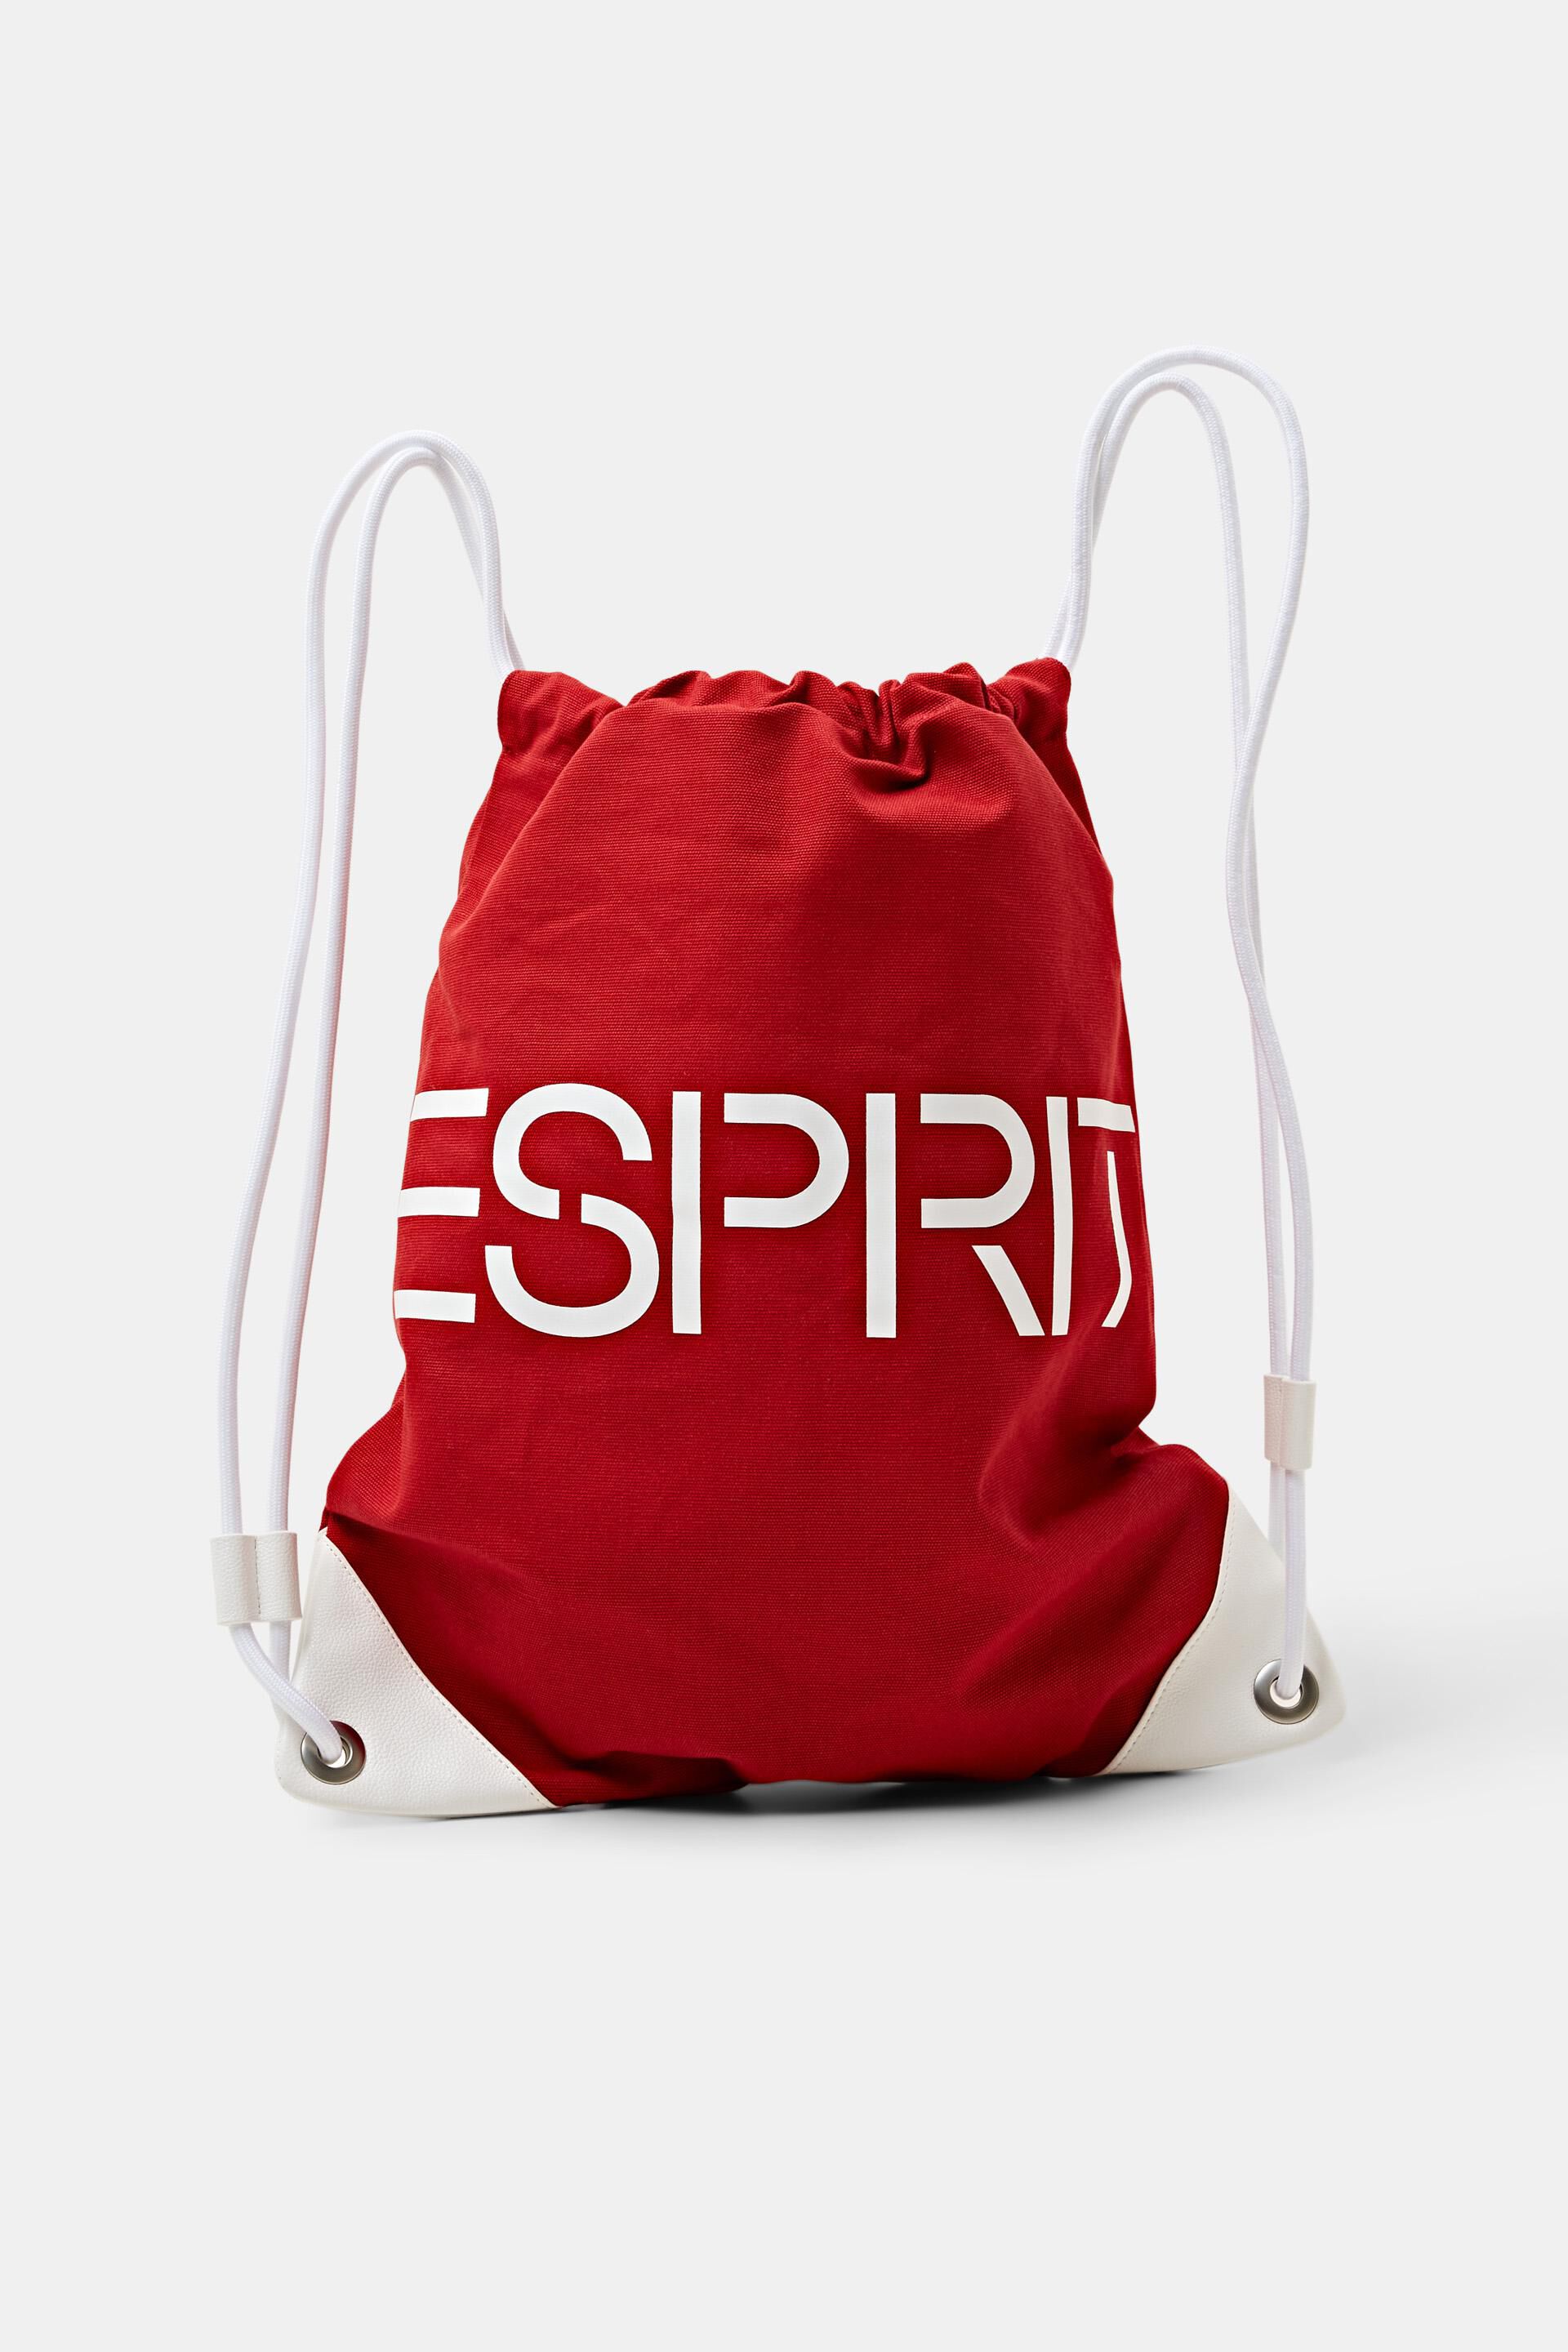 Esprit Logo aus Rucksack mit Kordelzug Baumwollcanvas